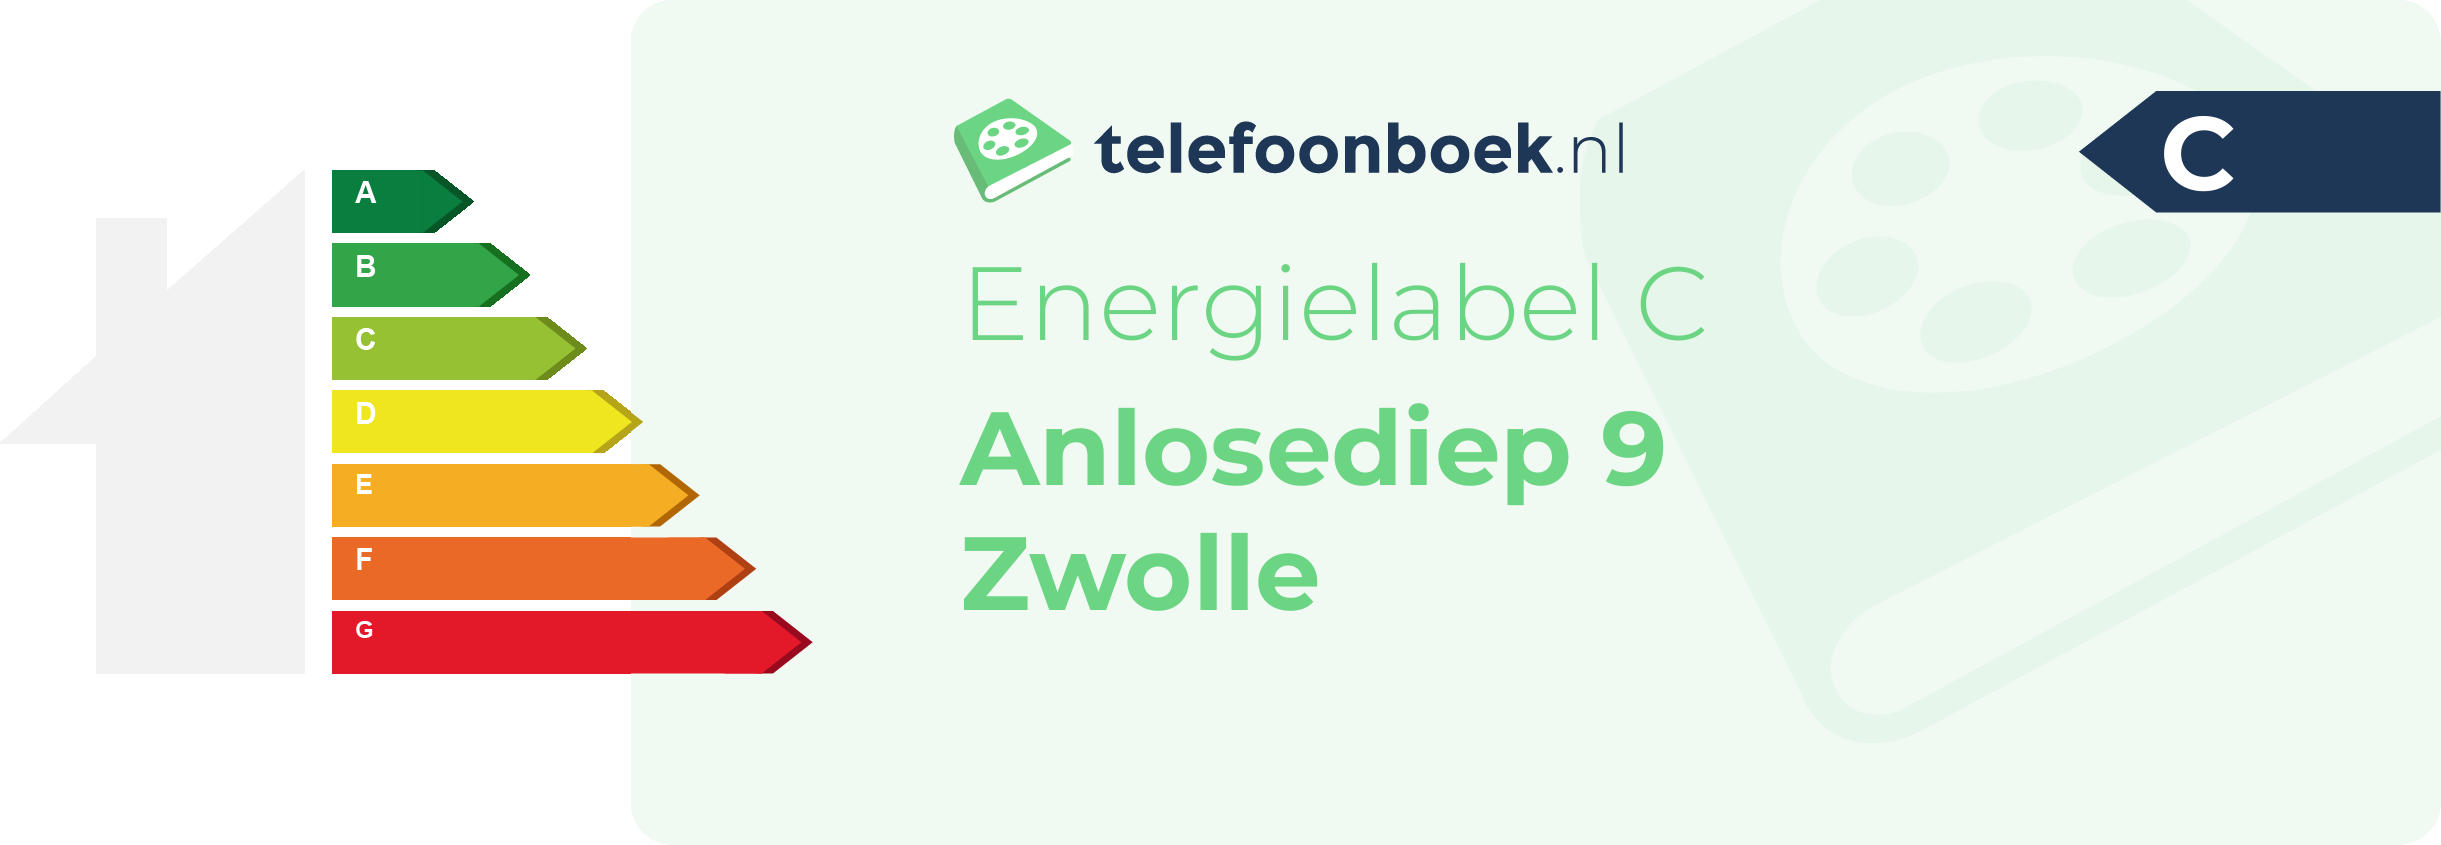 Energielabel Anlosediep 9 Zwolle